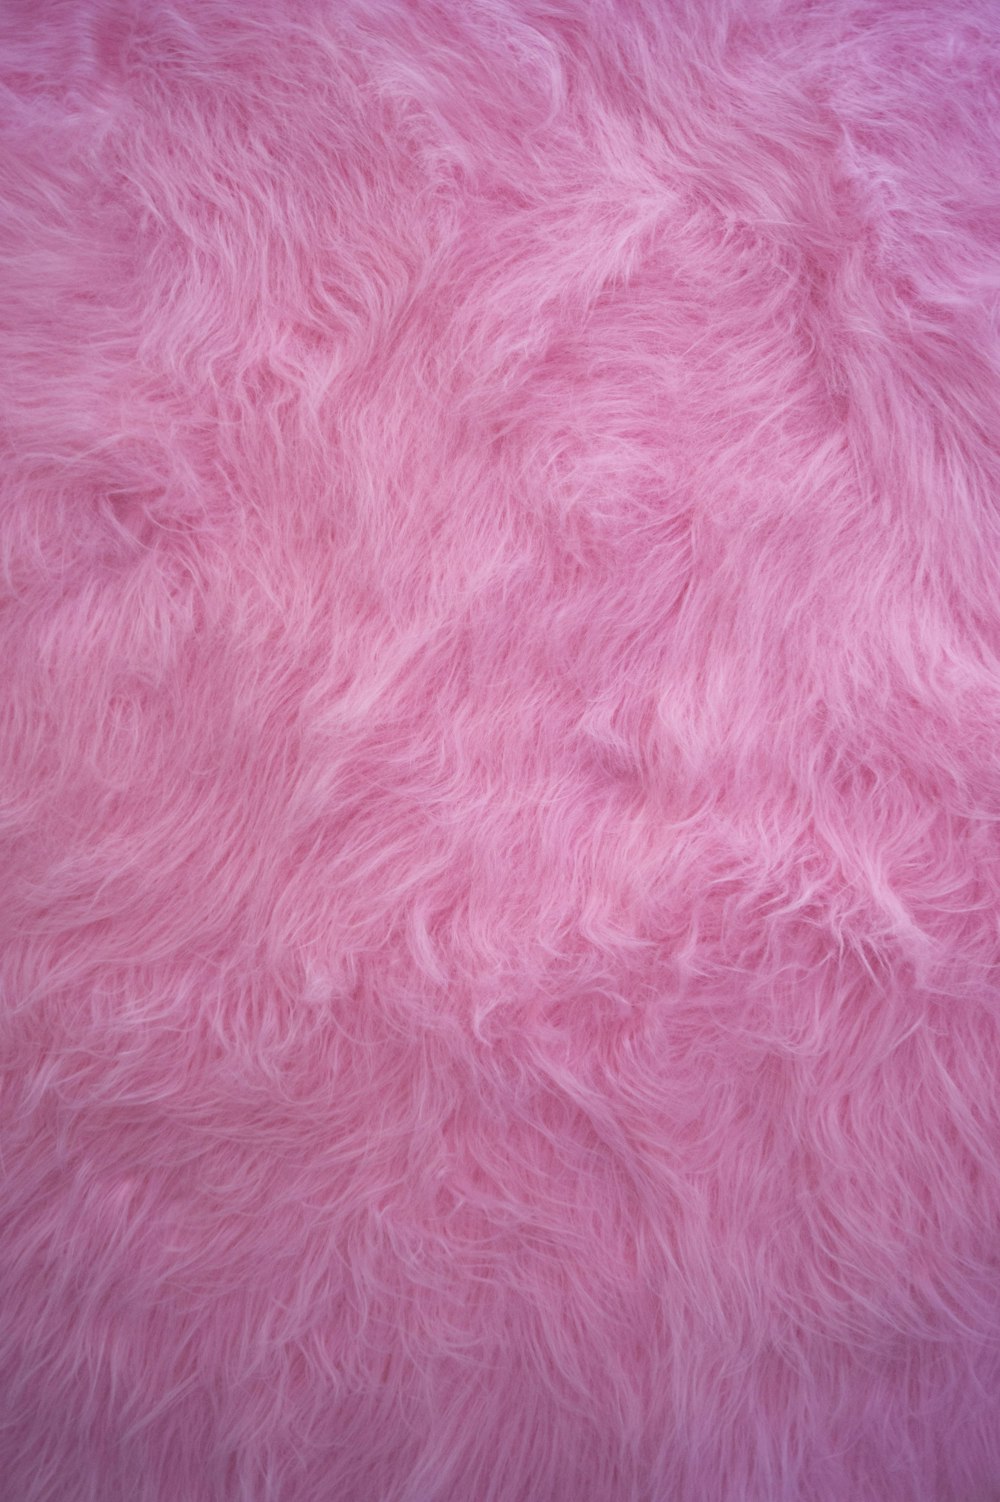 rosa Textil in Nahaufnahmen